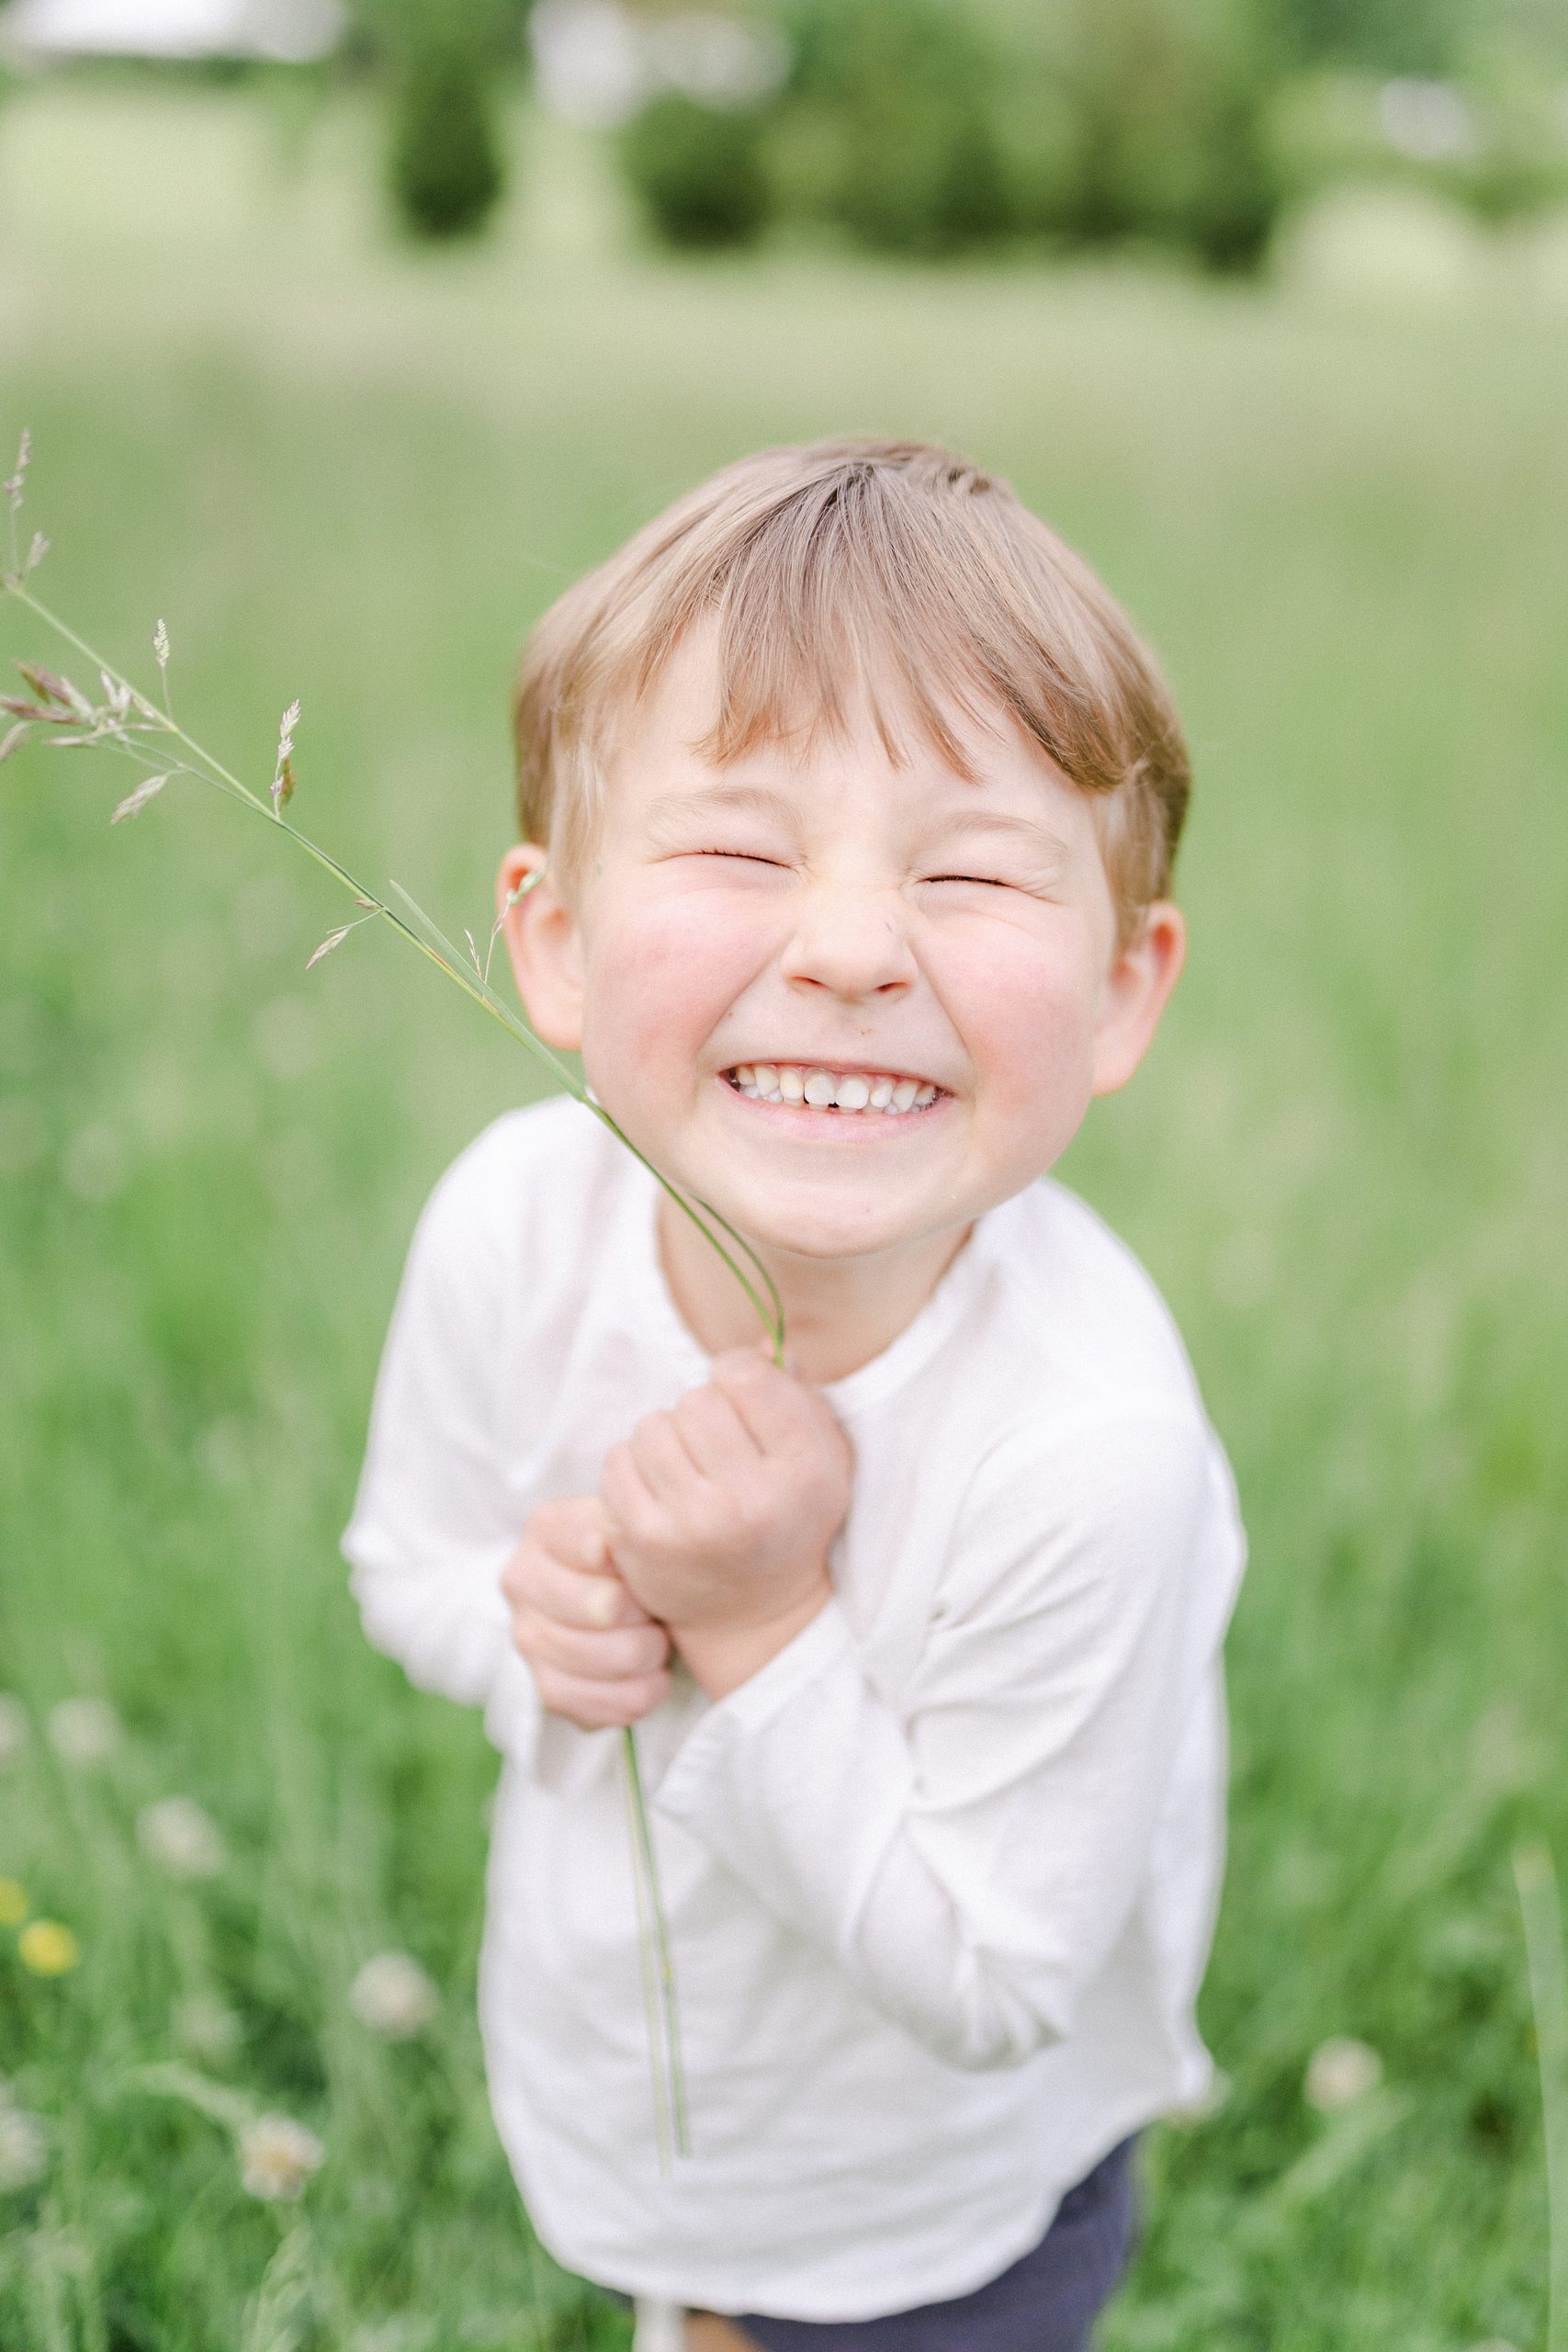 Little boy holding a flower in field of Brentwood TN